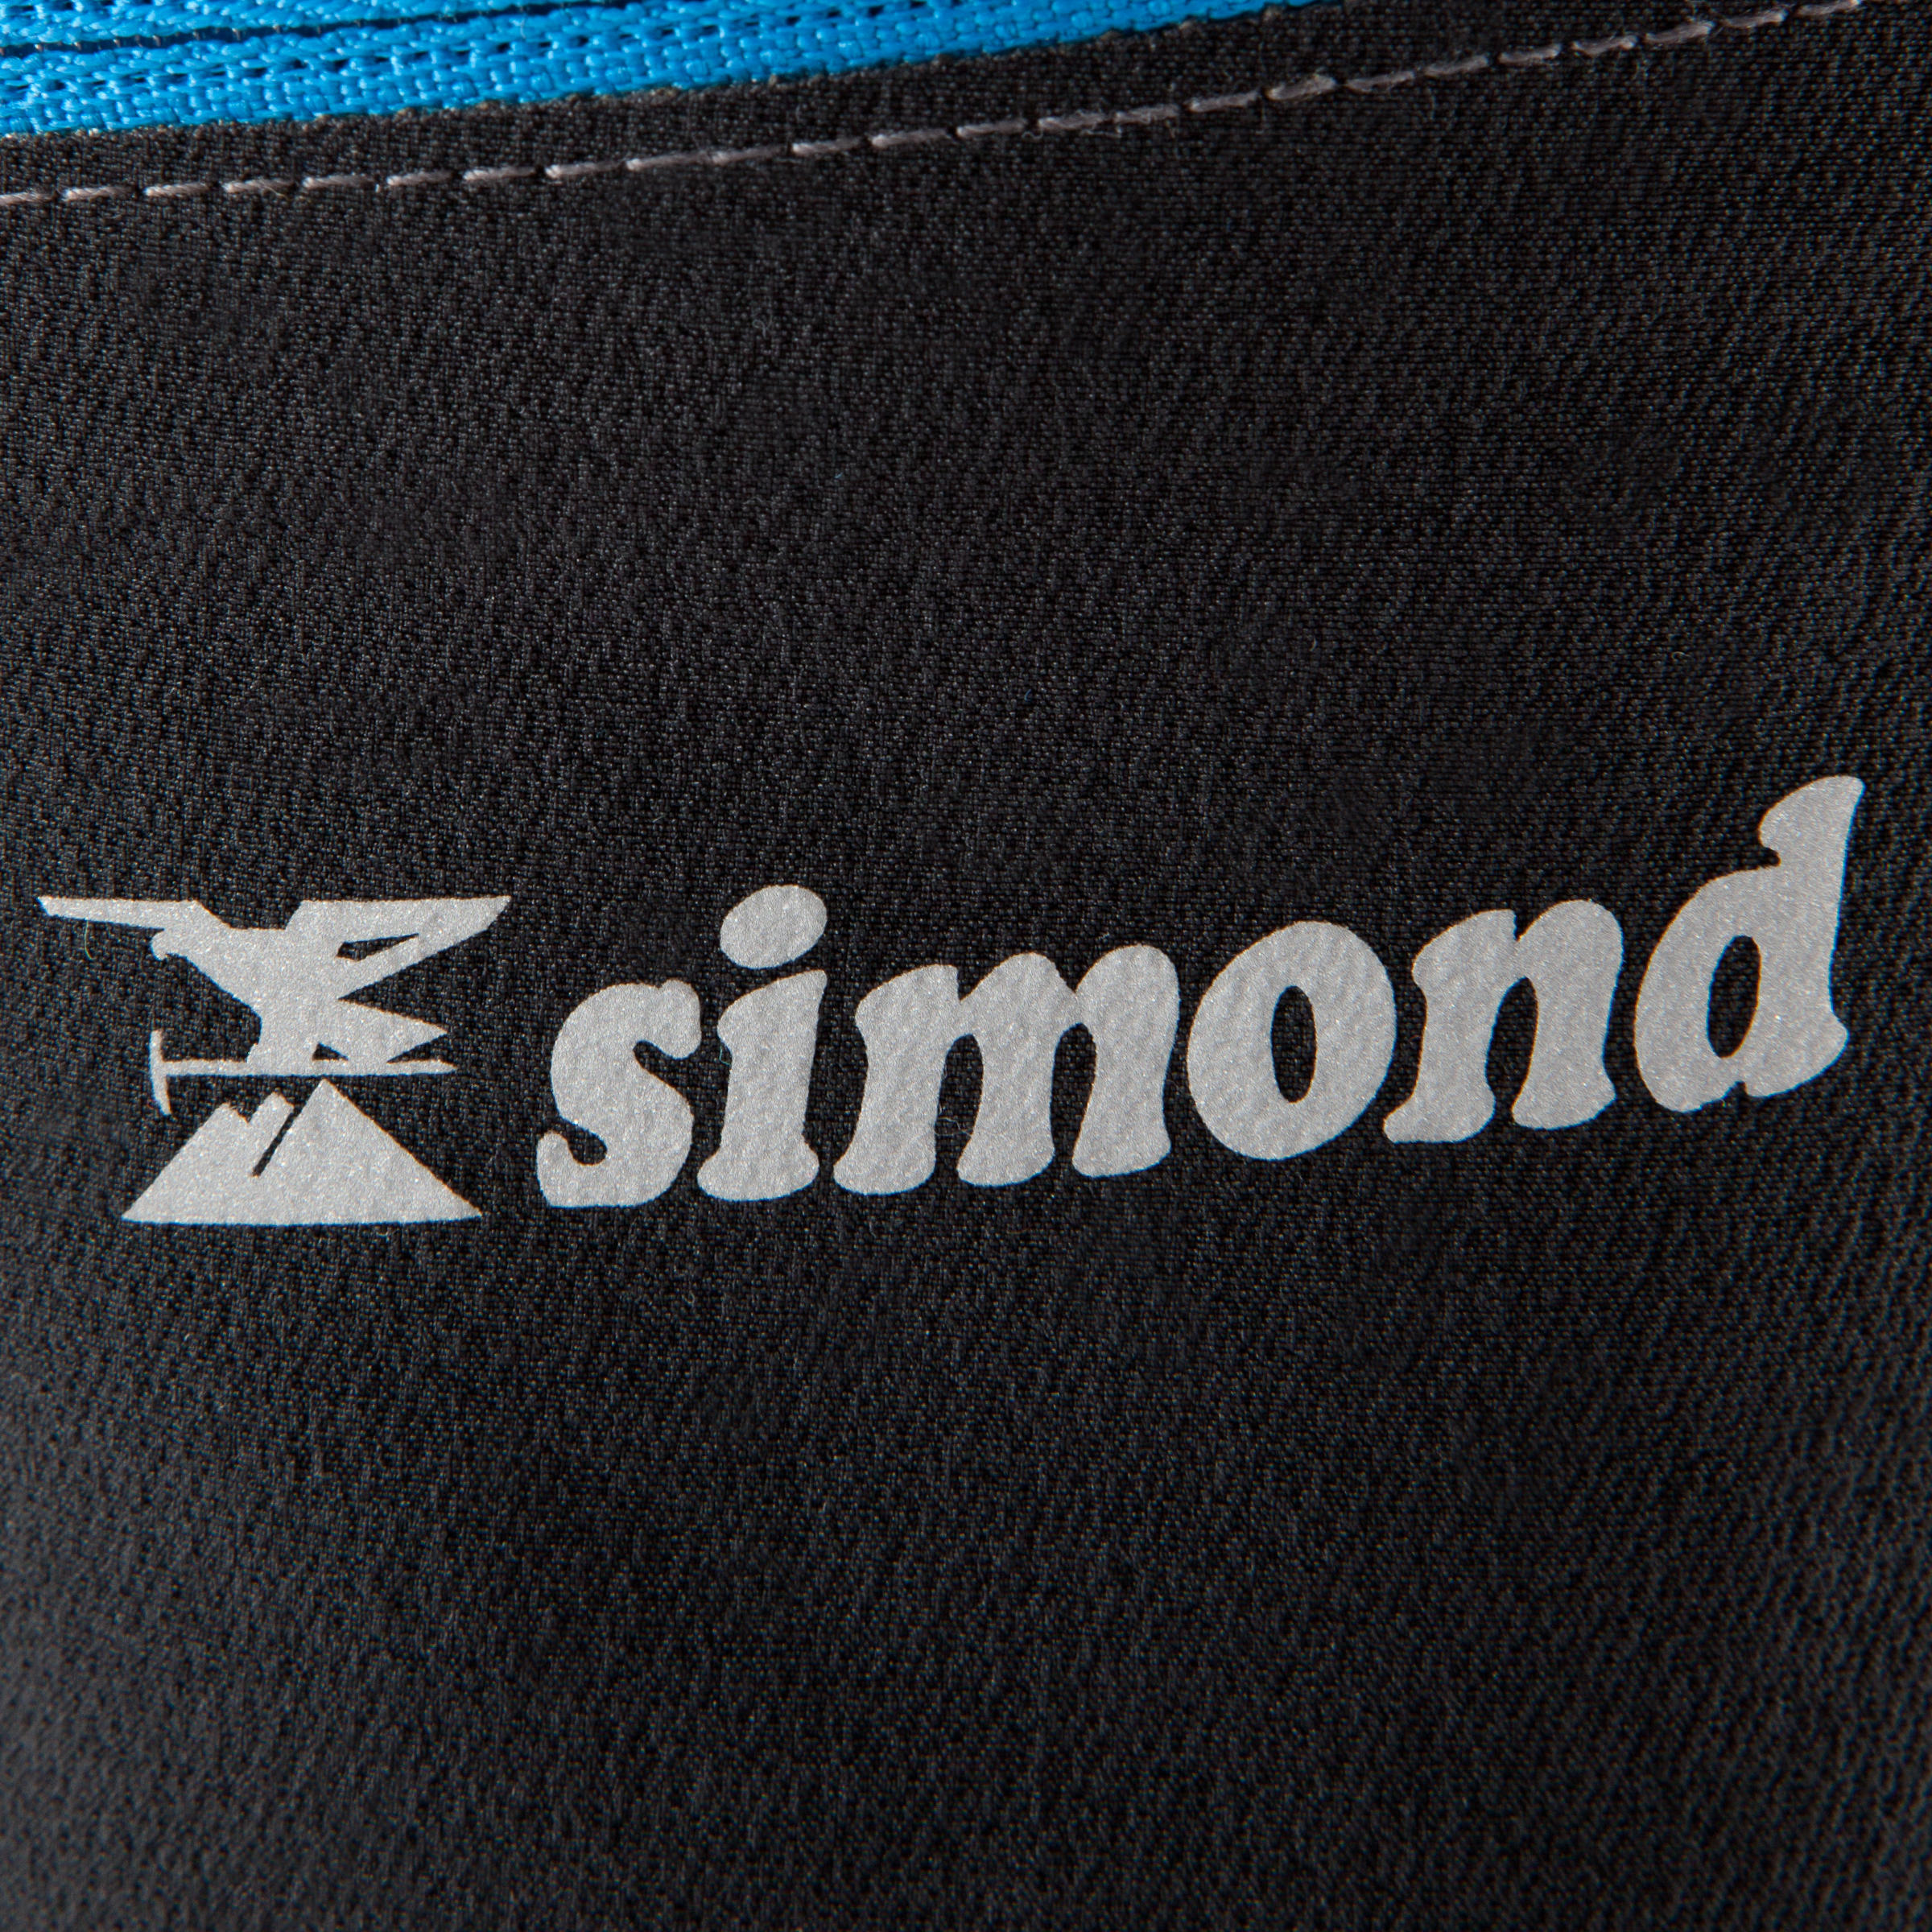 Pantalones Simond de Alpinismo Montaña Tirantes Negro Decathlon